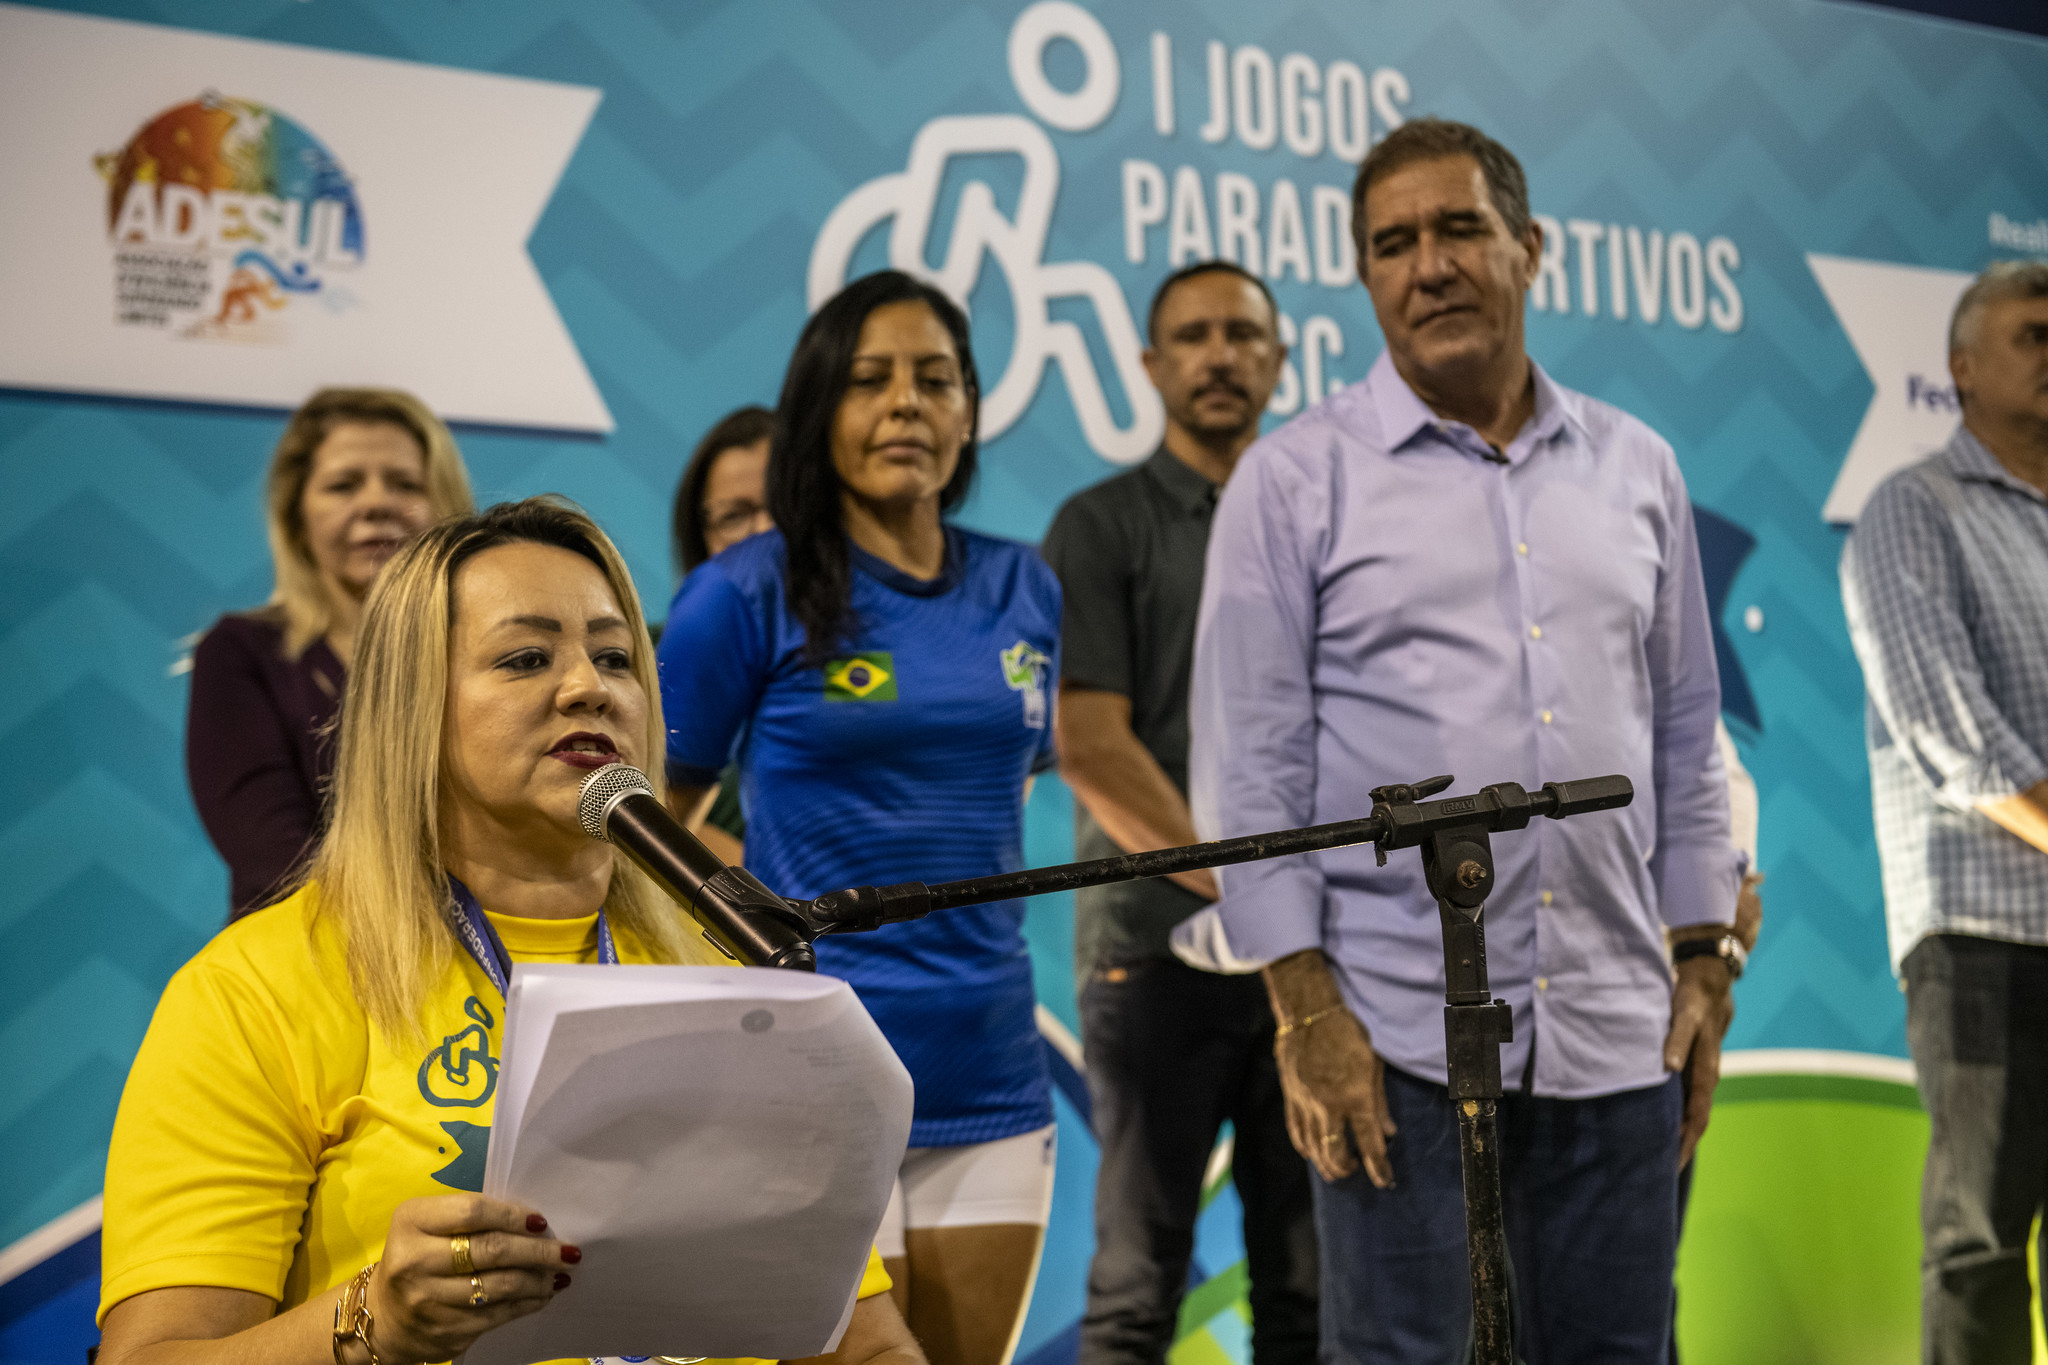 I Jogos Paradesportivos reforçam o papel inclusivo do Sesc Ceará